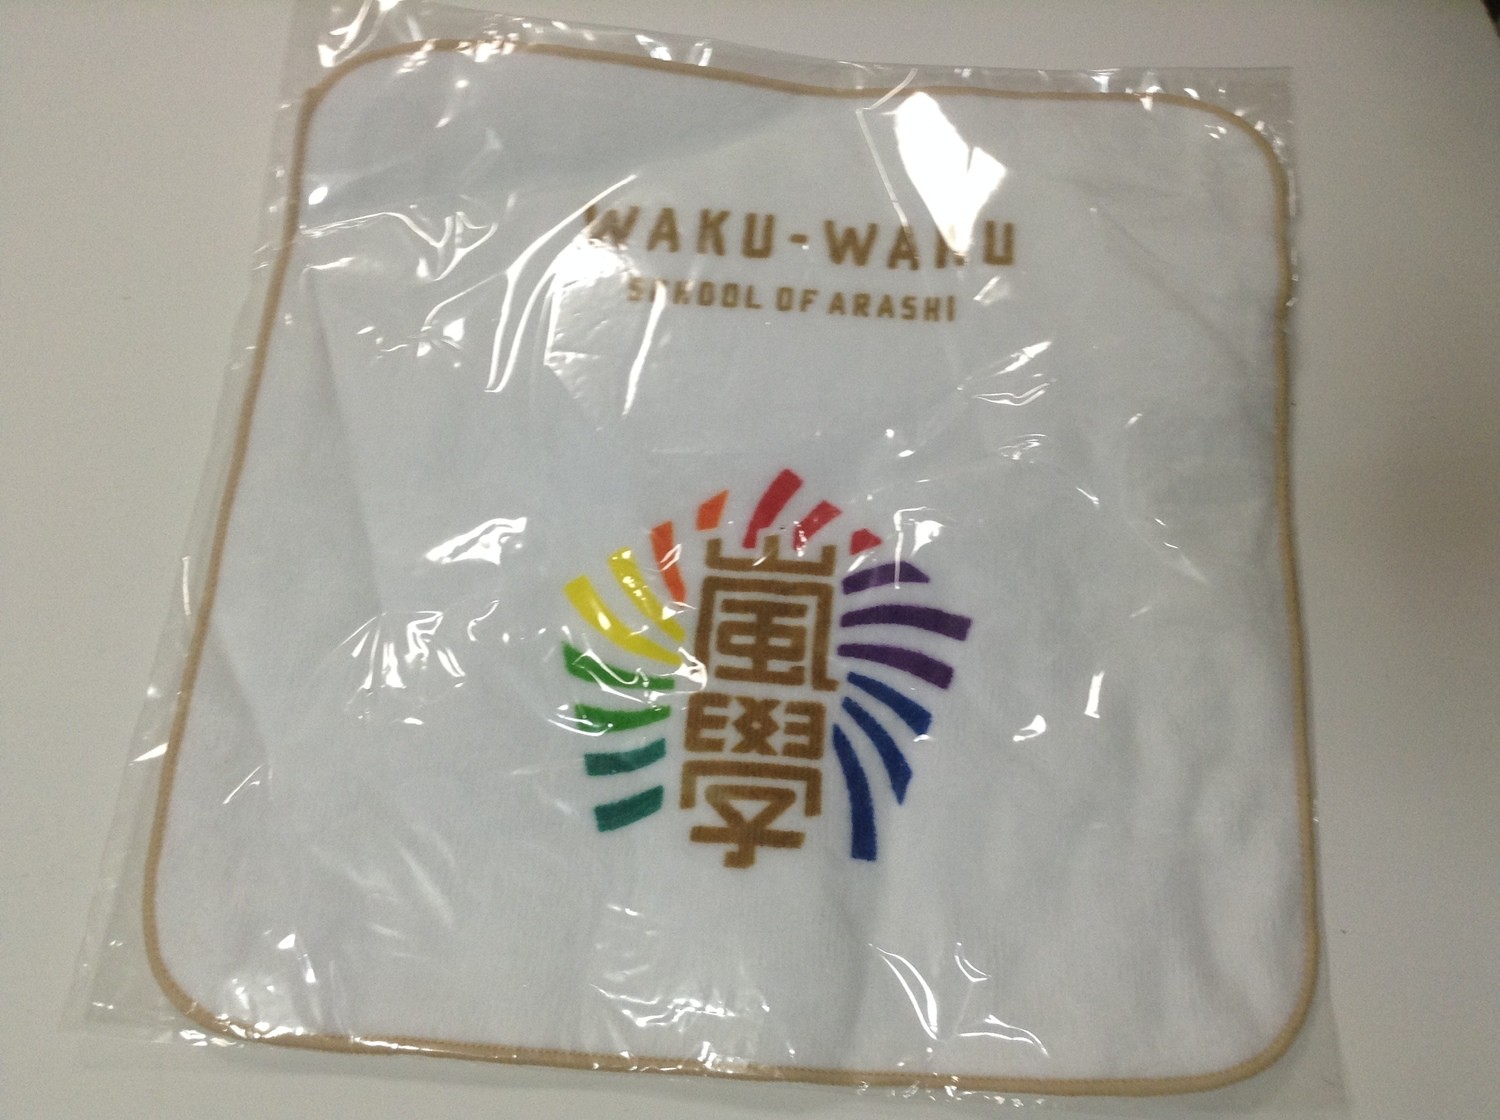 Waku Waku Gakou 2014 Mini Towel